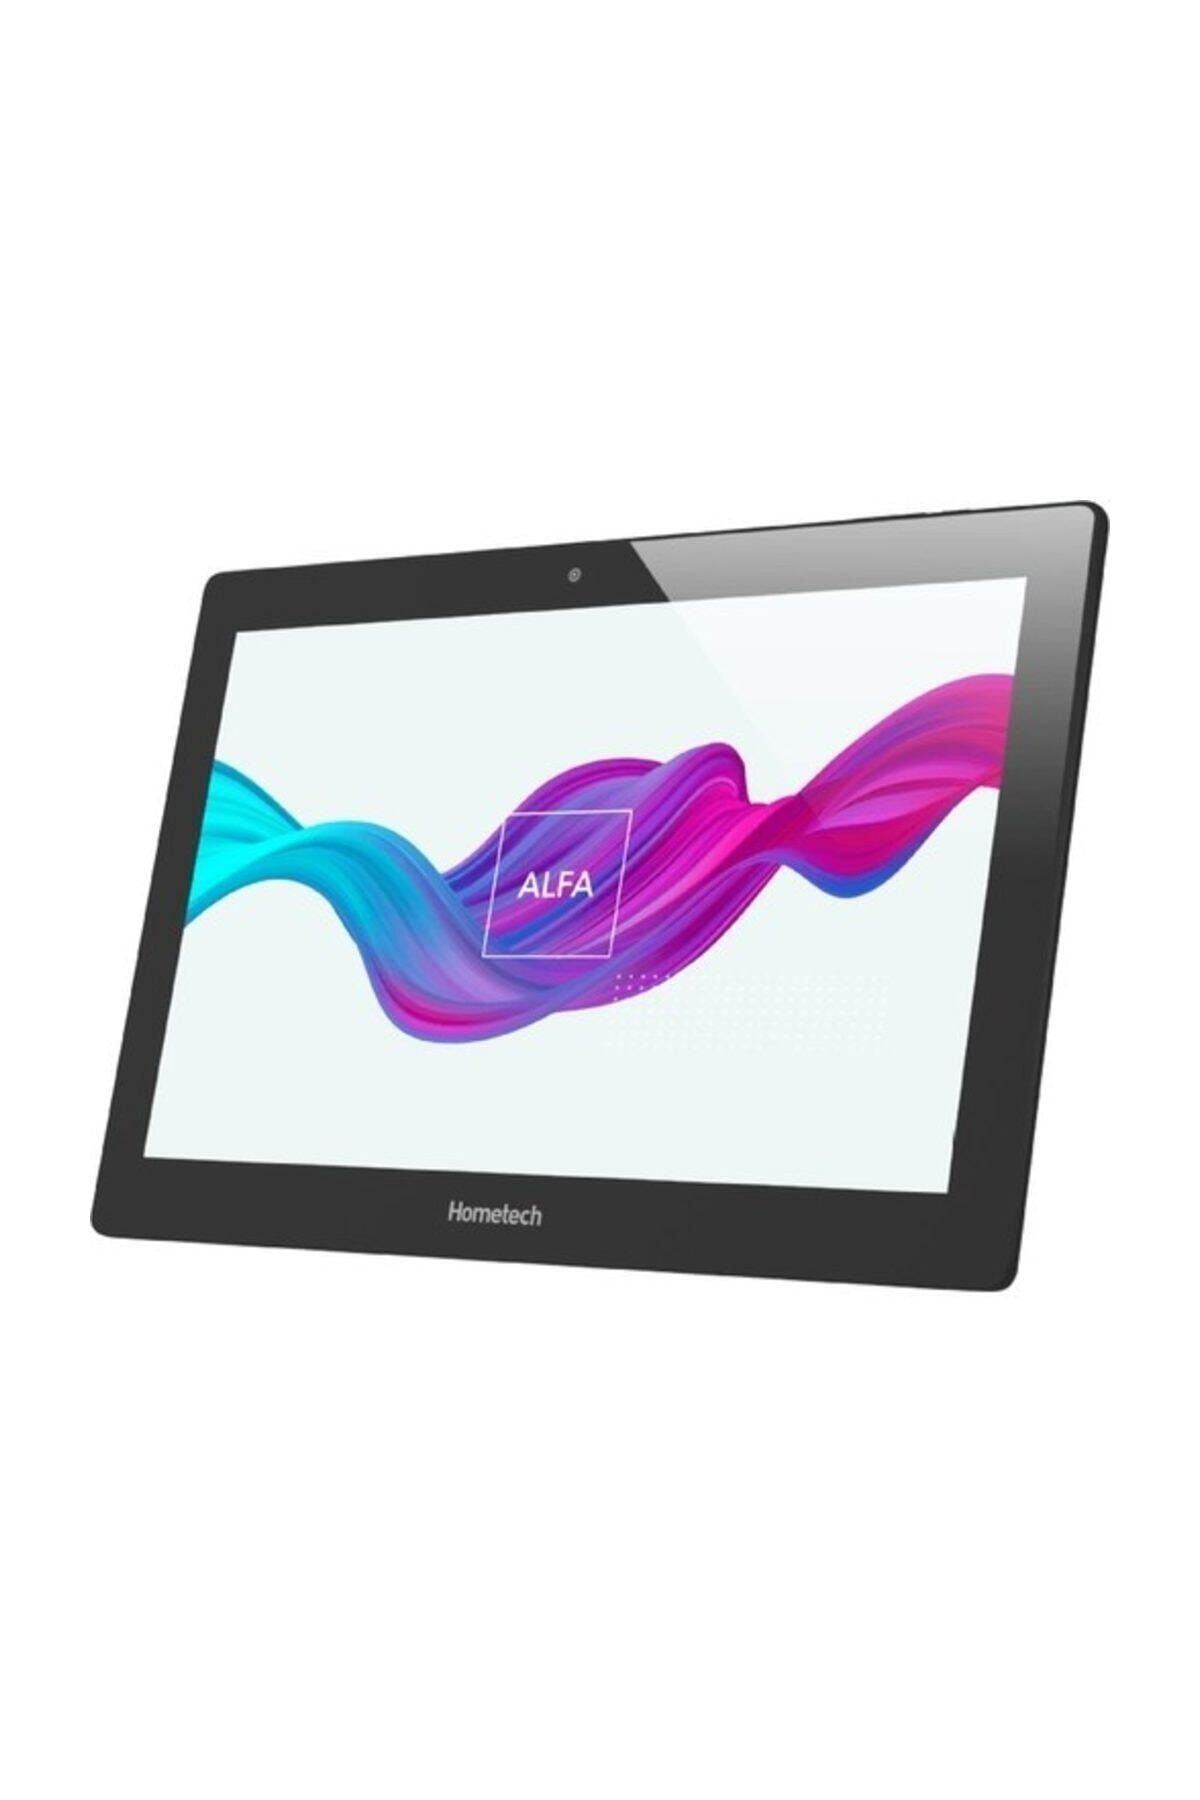 Hometech Alfa 10ma 2 Gb 16 Gb 10'' 3g Sim Kartlı Tablet